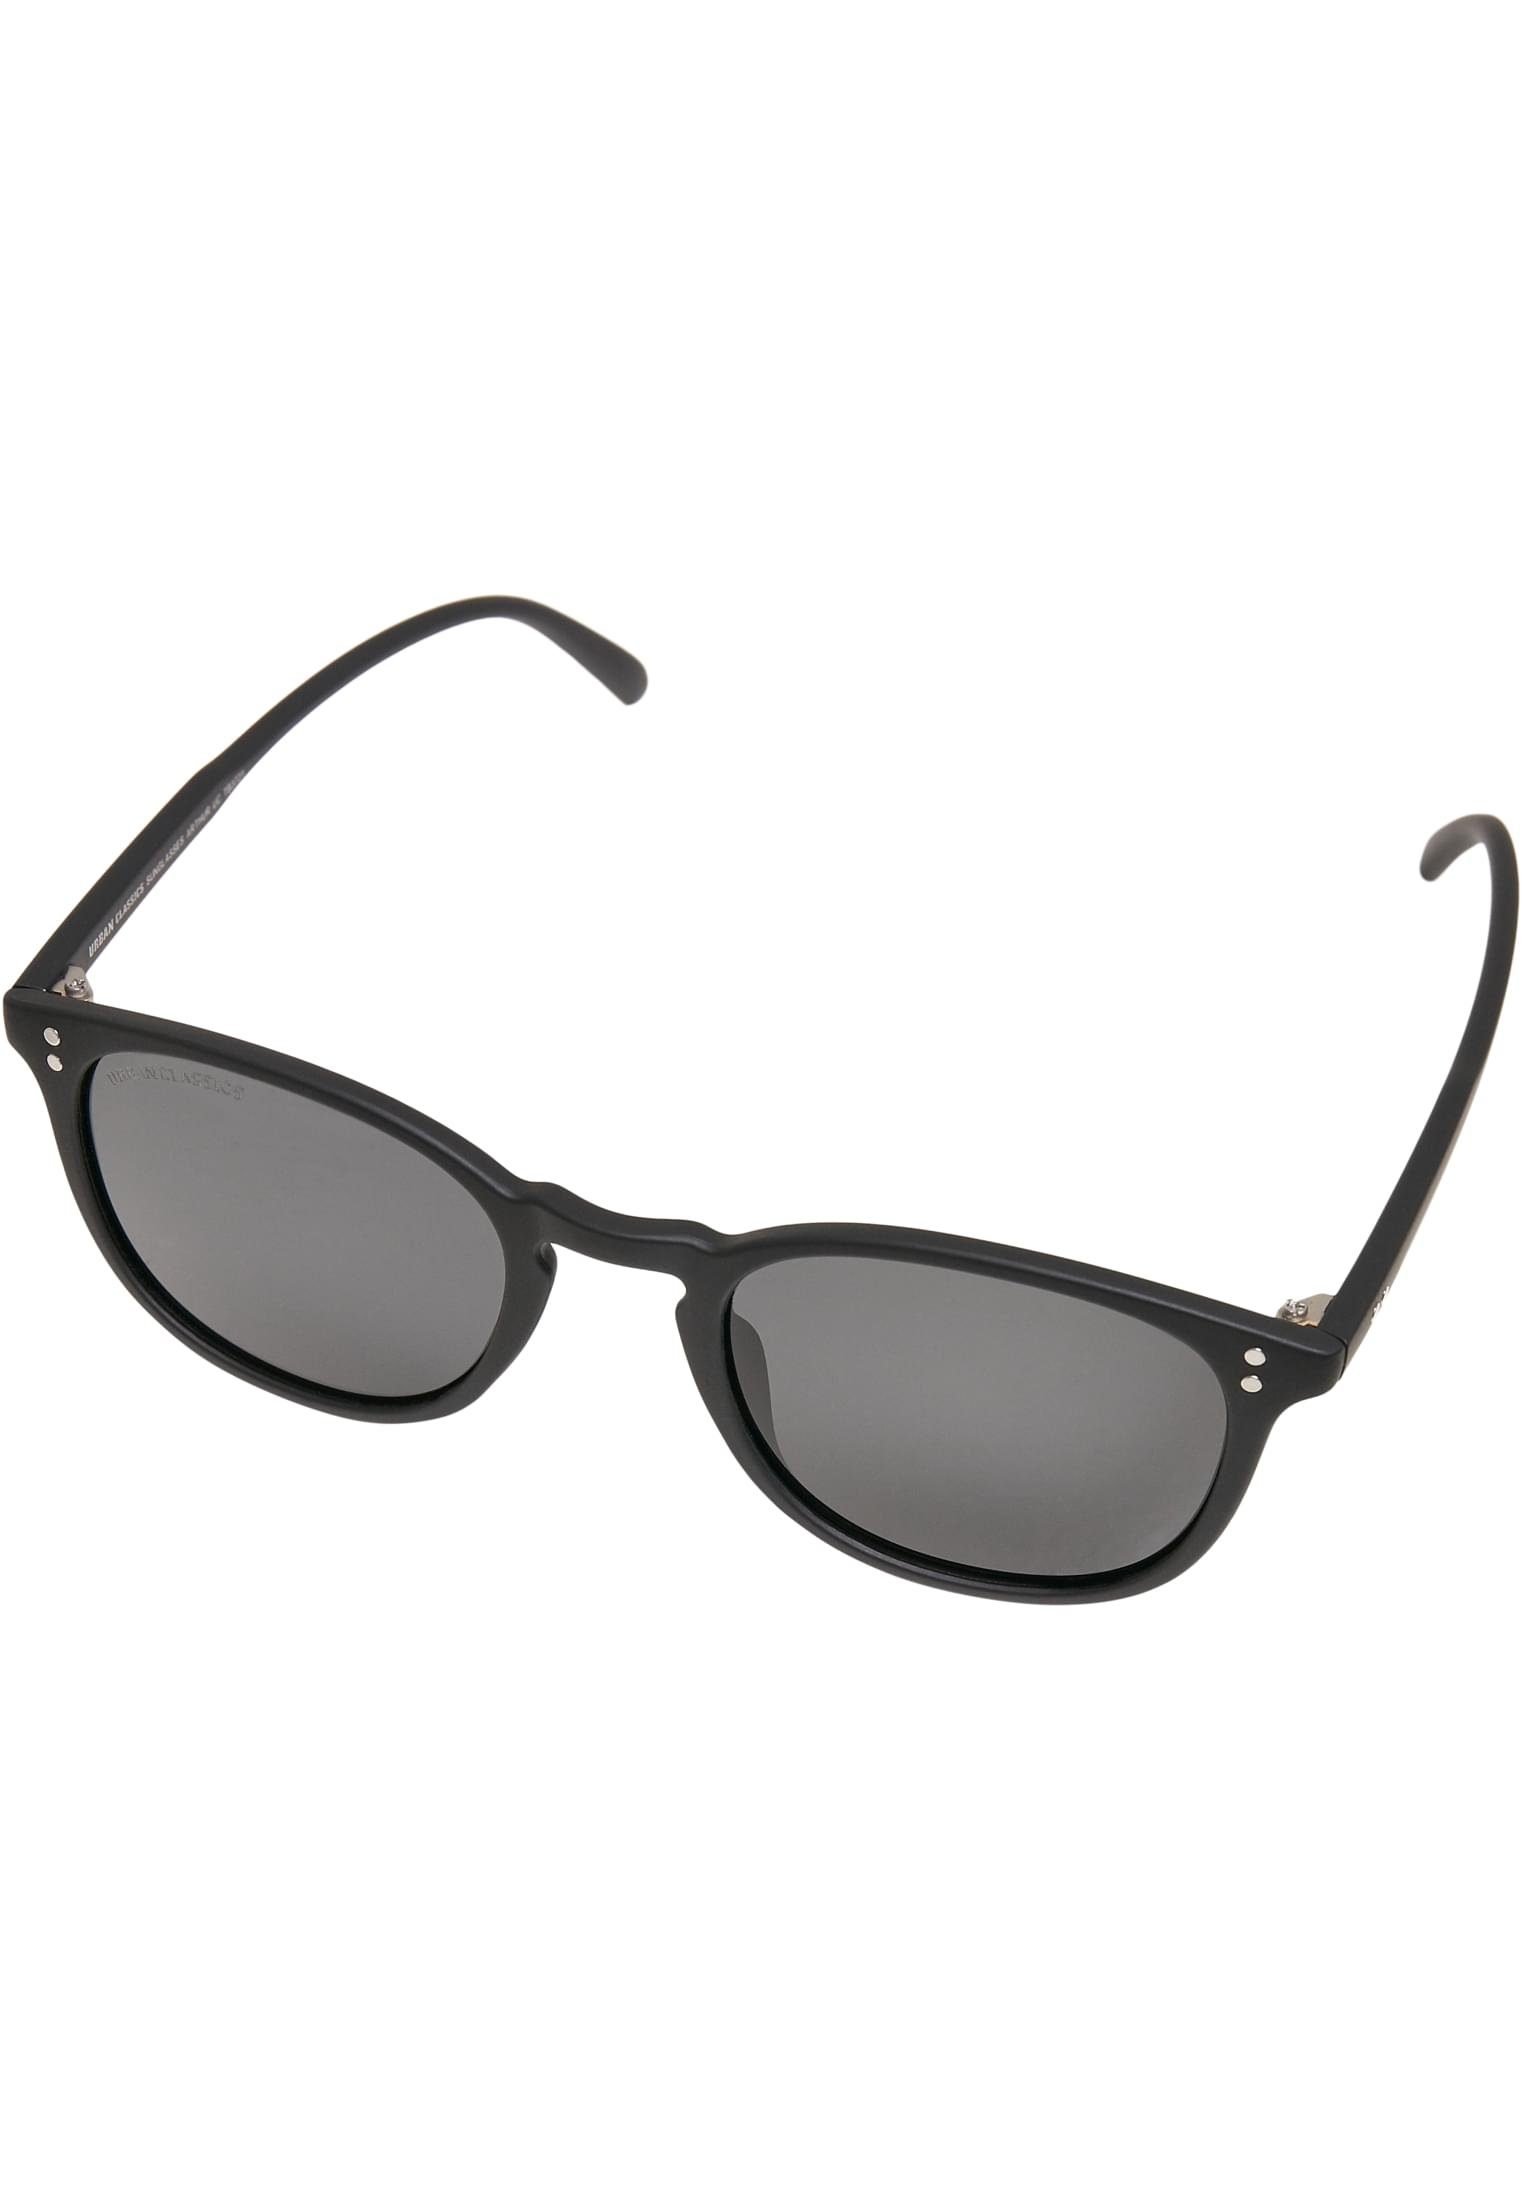 Arthur UC CLASSICS Accessoires Sunglasses Sonnenbrille black/grey URBAN